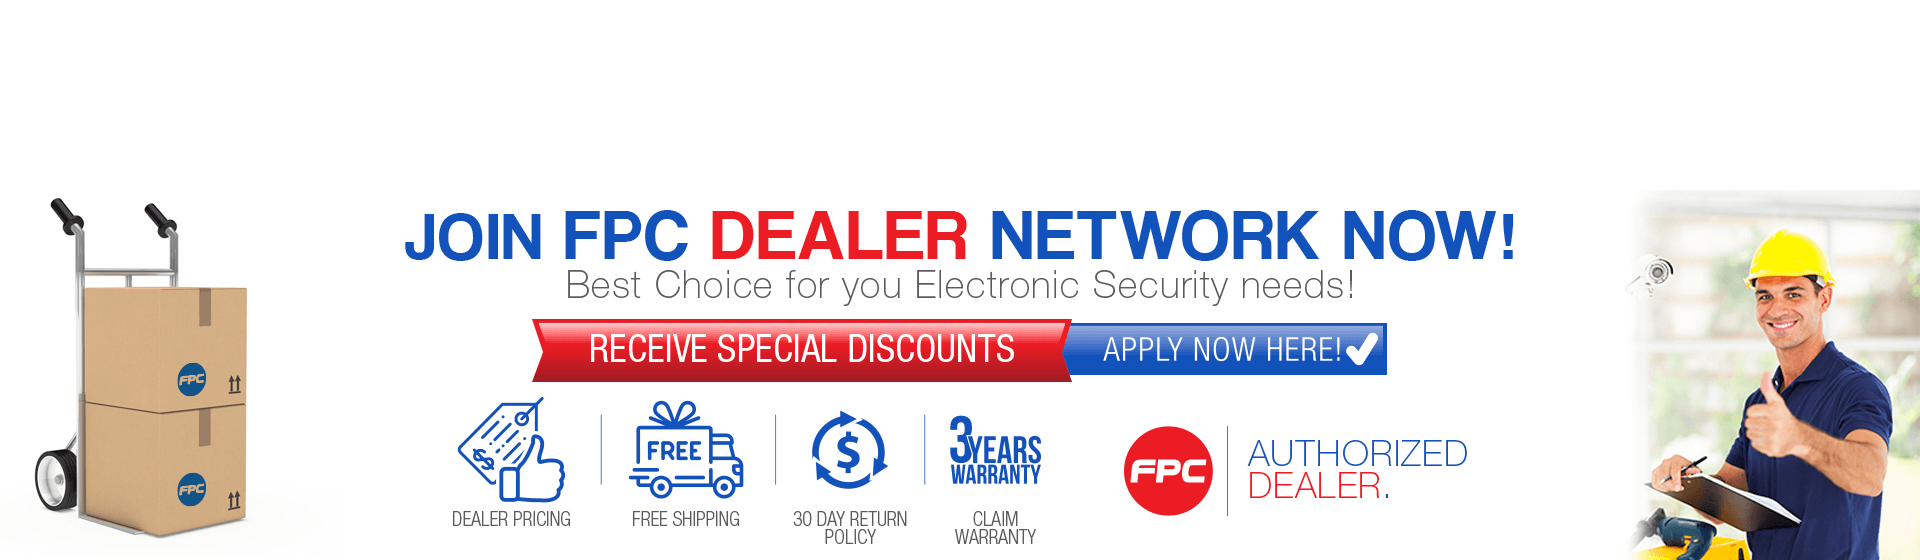 Join FPC Dealer Network